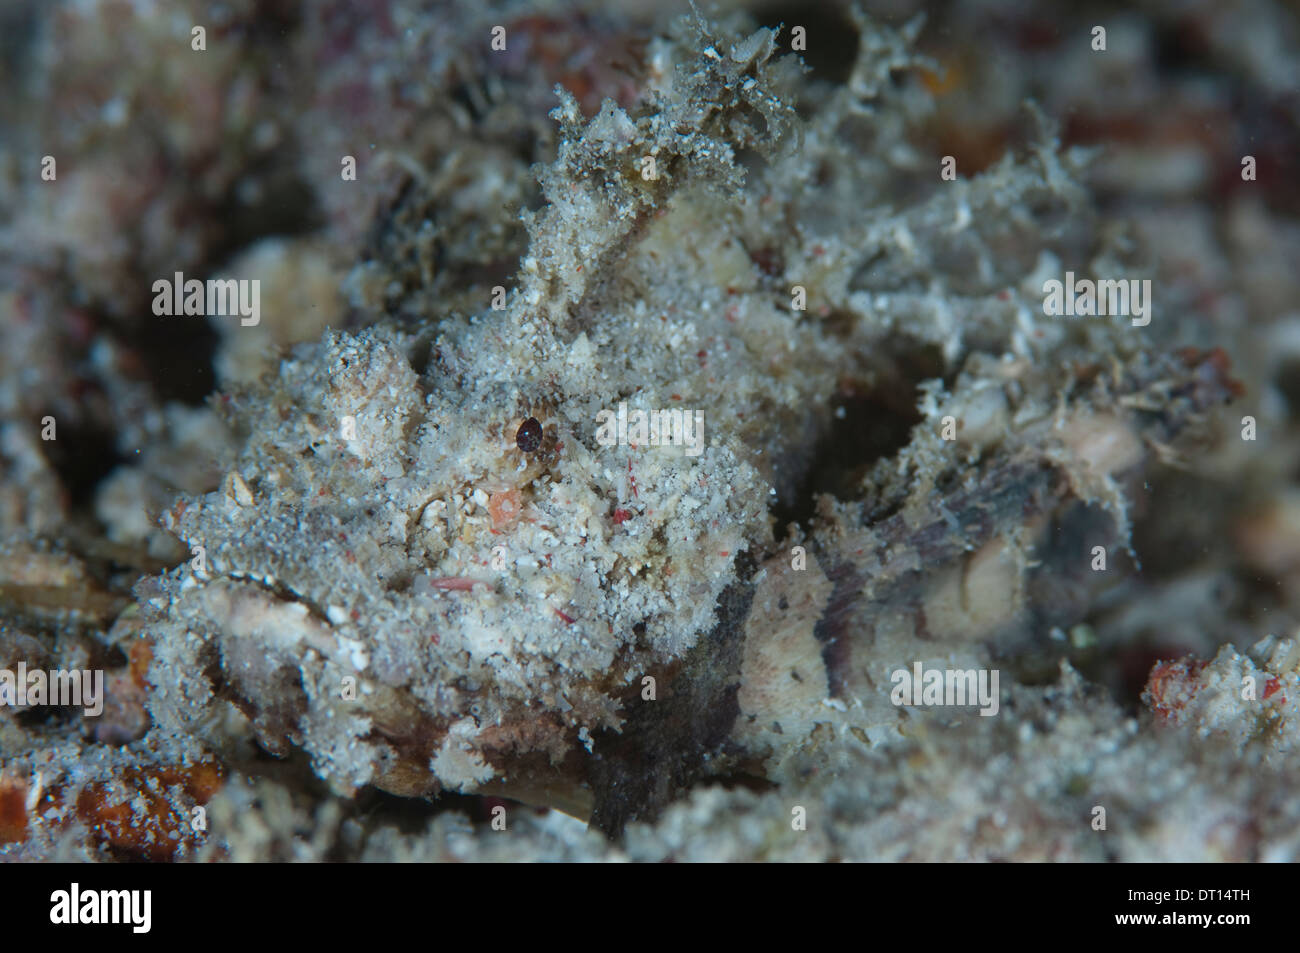 Spiny Devilfish, Inimicus didactylus, close up of camouflaged individual, Halmahera, Maluku Islands, Indonesia Stock Photo